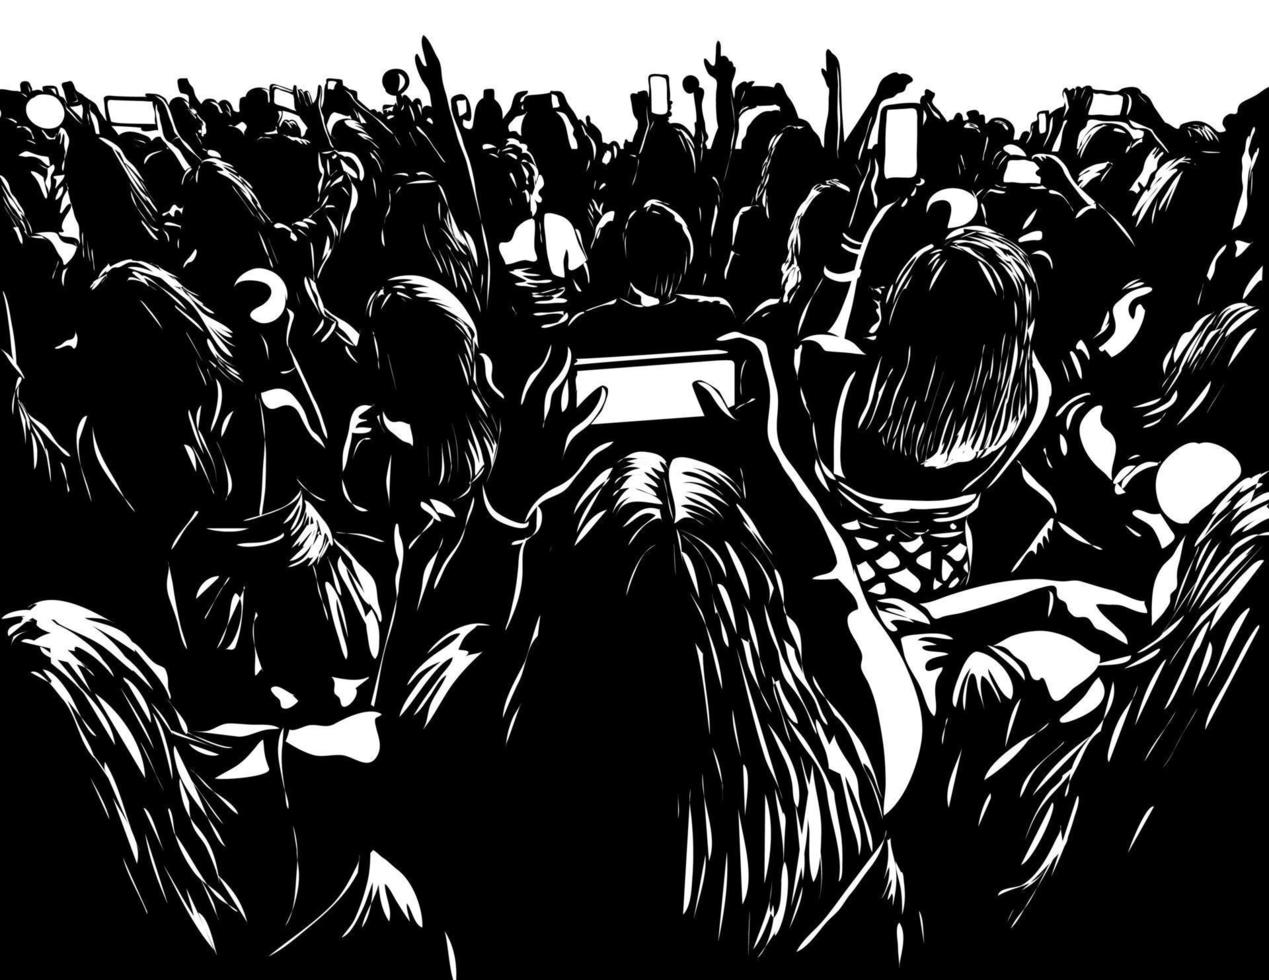 multitud de jóvenes con celular en un concierto en vivo estilo woodcut vector